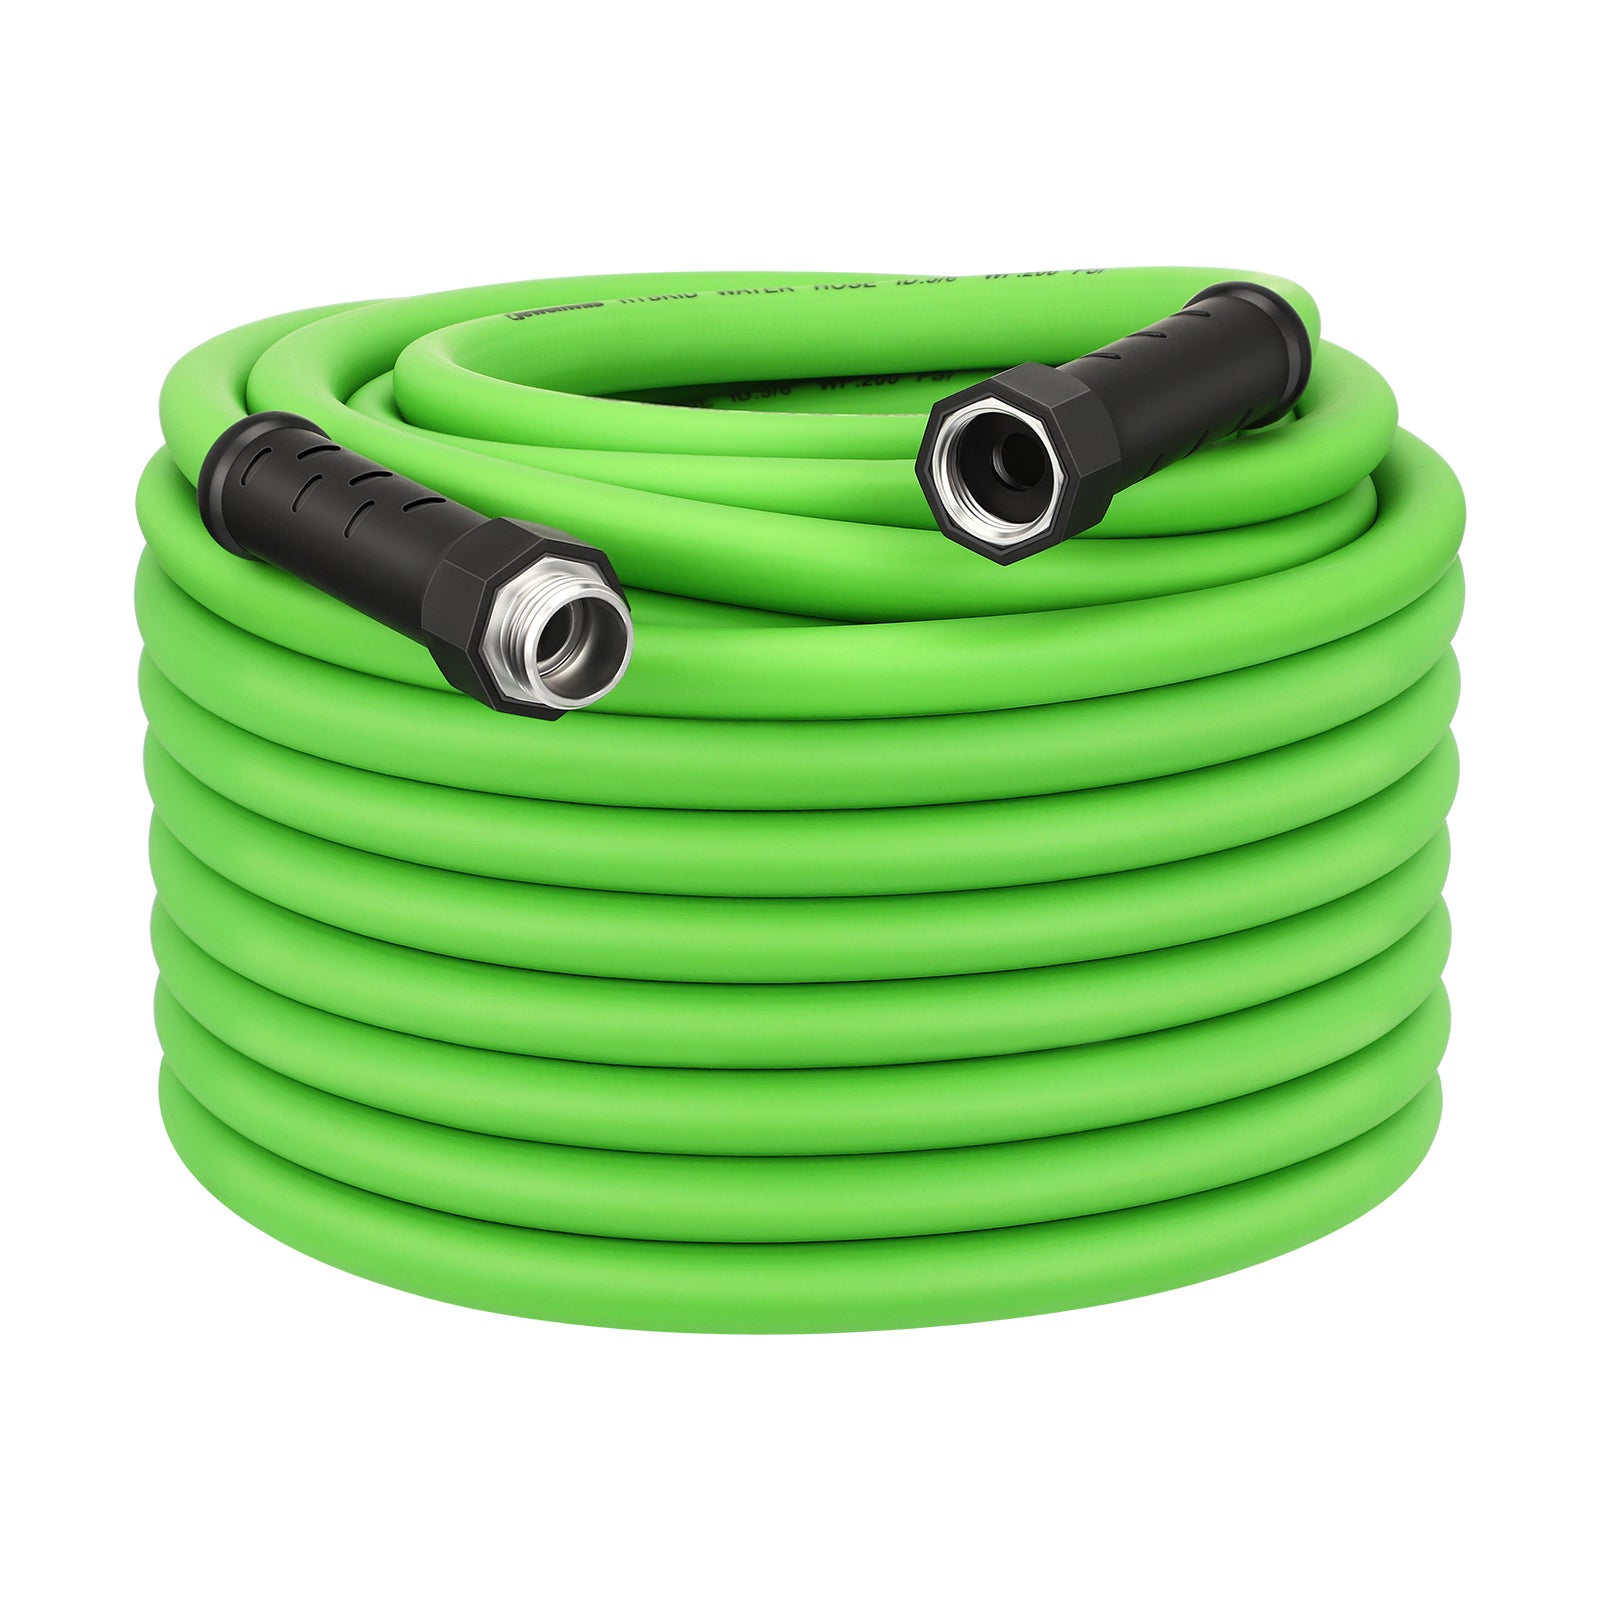 Utility auto hose reel ce for Gardens & Irrigation 